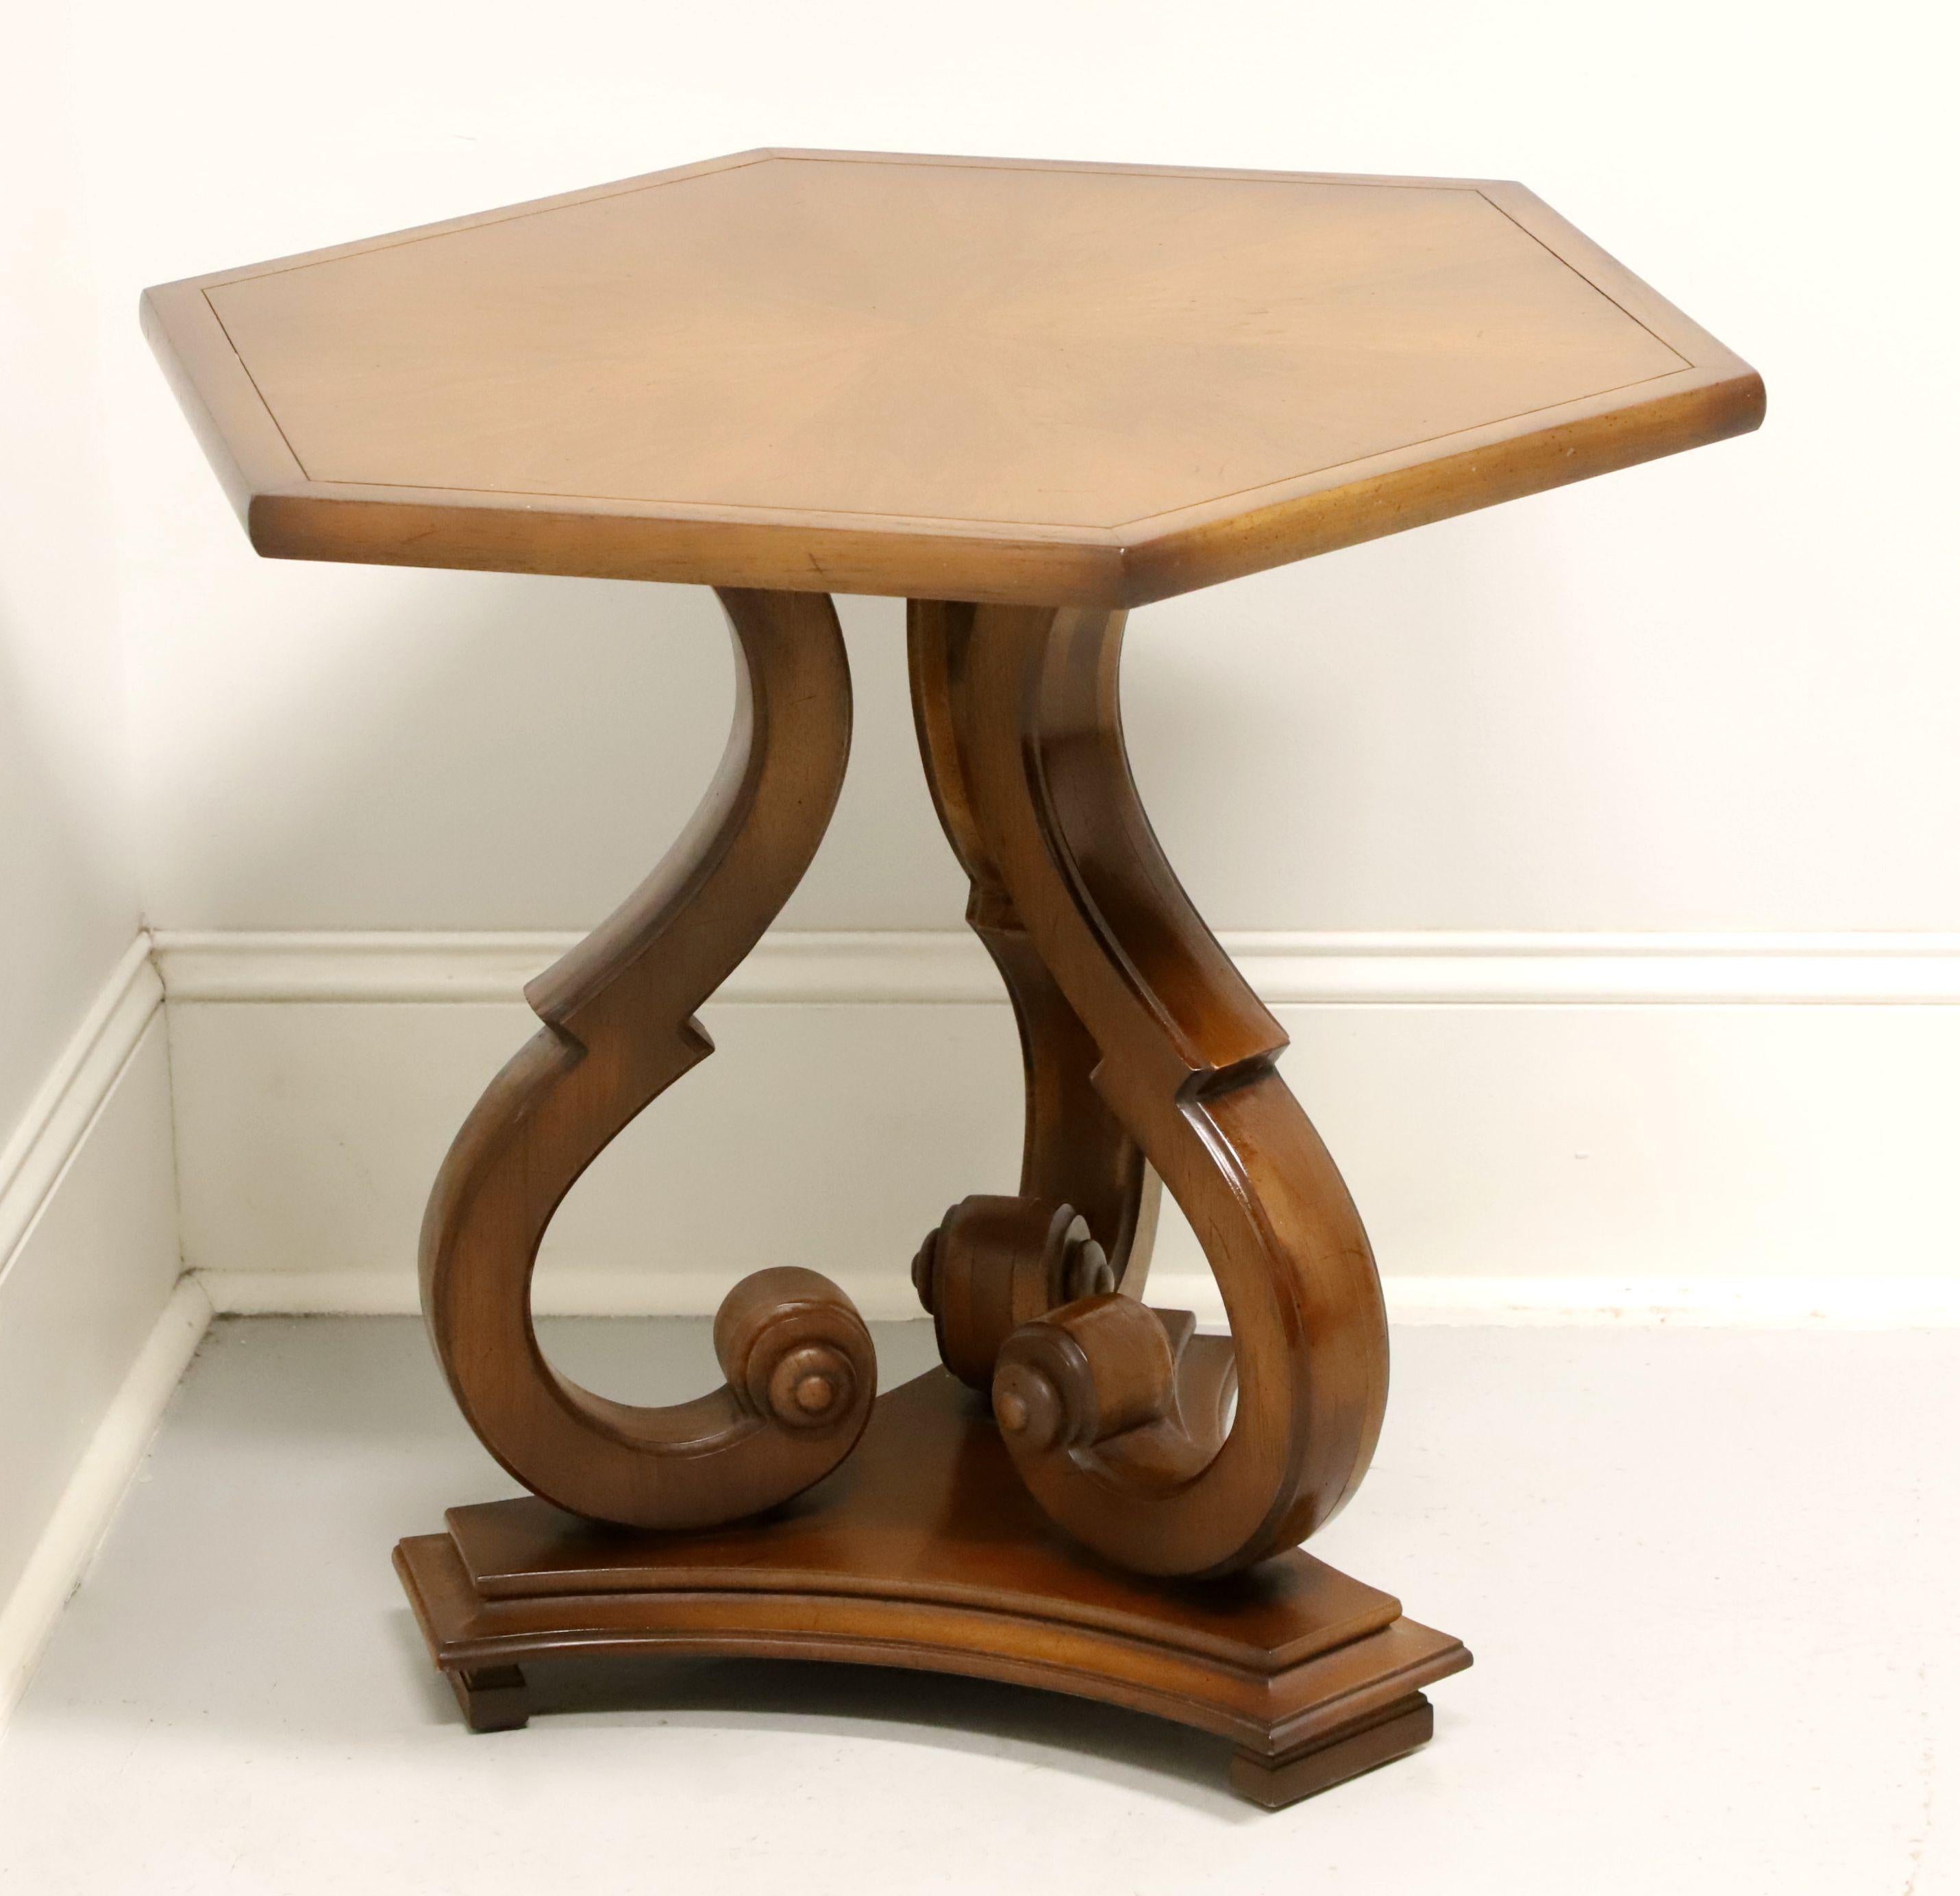 Une table d'appoint de style néoclassique par Tomlinson Furniture. En noyer ou en bois de noyer similaire, avec une finition muscade, un plateau en bois flammé de forme hexagonale avec des bandes et des incrustations, et trois pieds en forme de